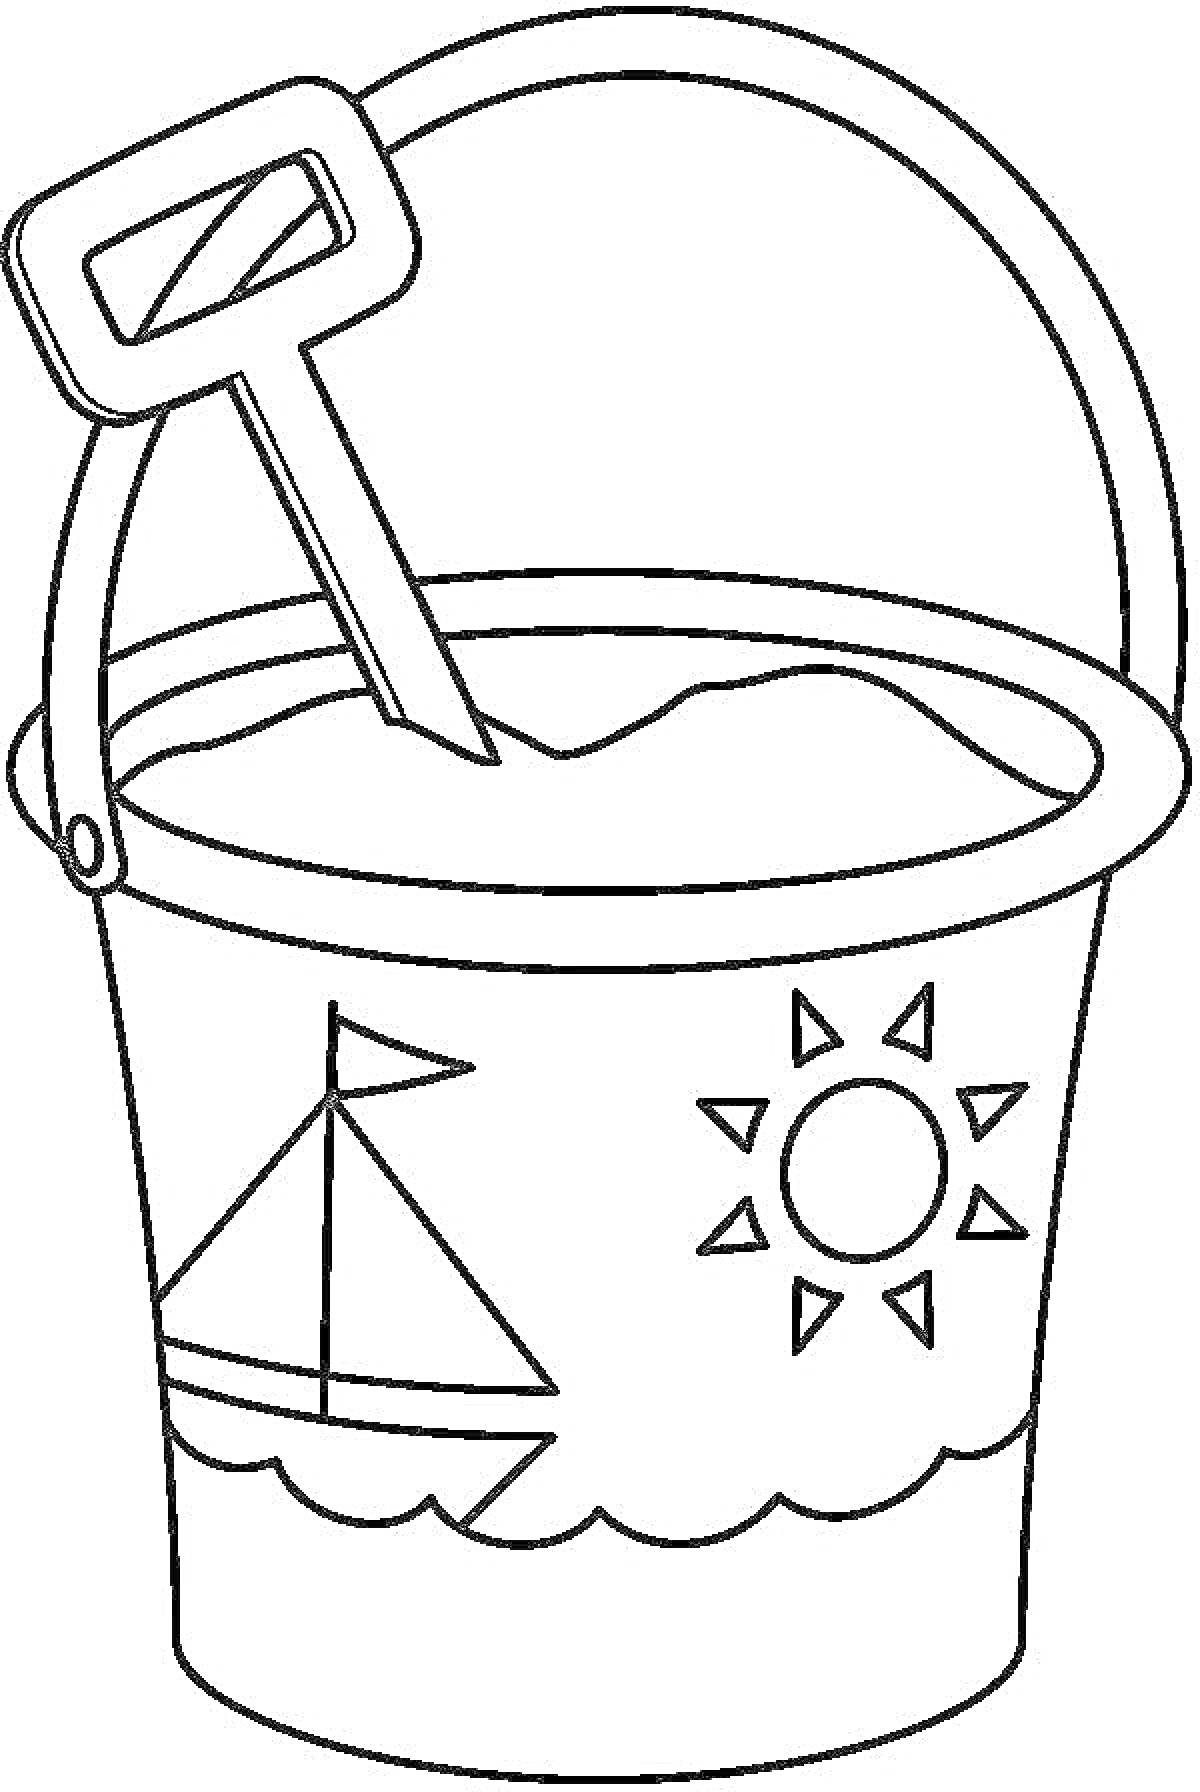 Раскраска ведро с песком, лопаткой, изображением парусника и солнца